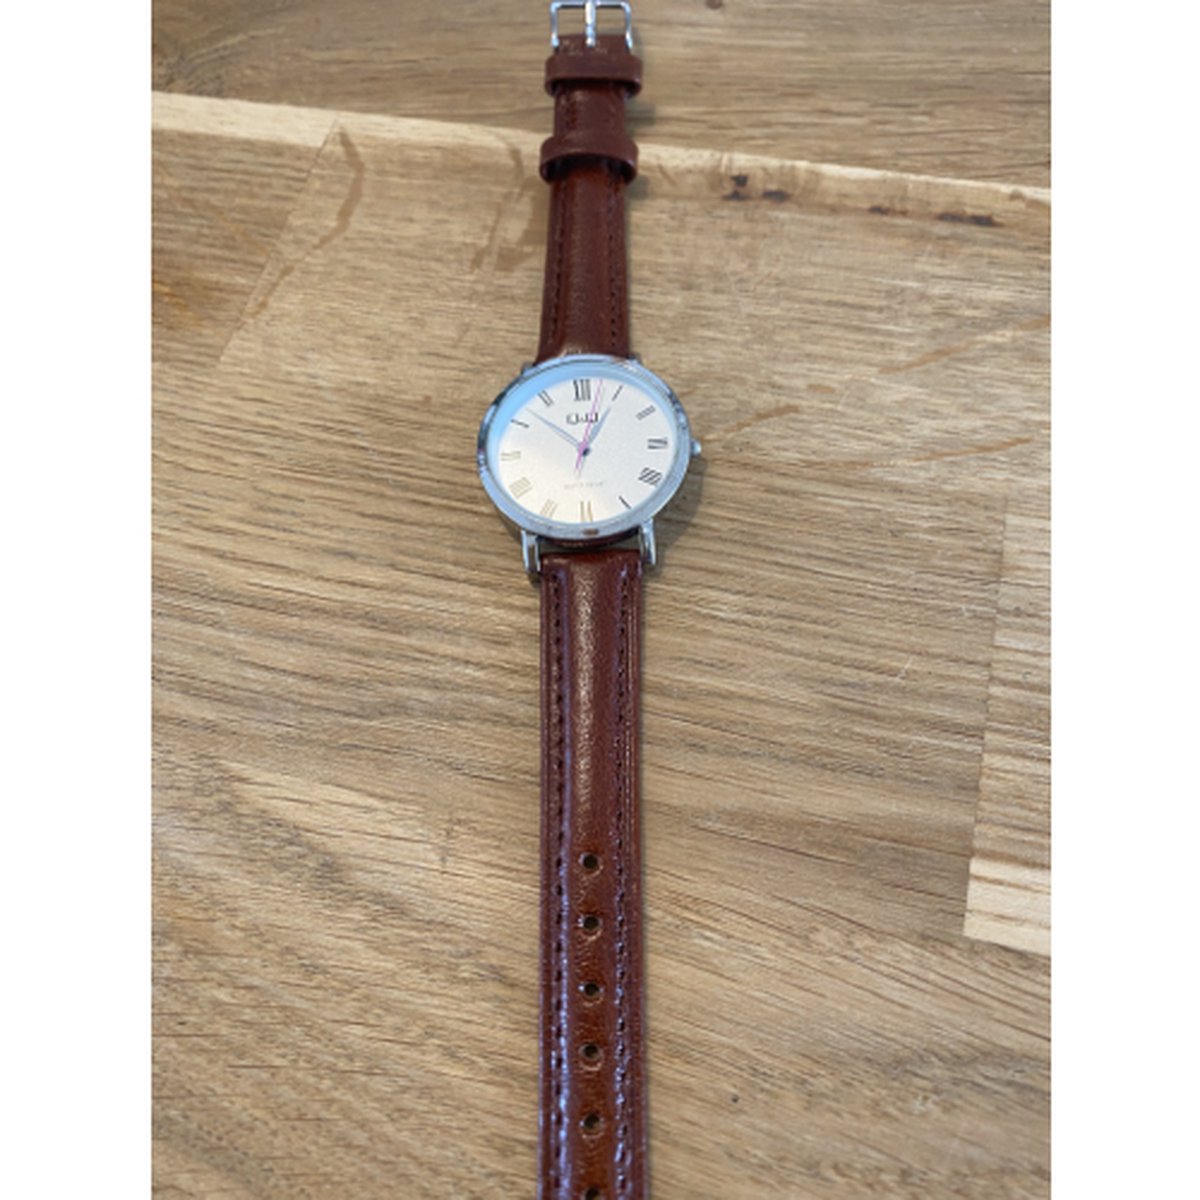 Horlogeband-dames-14 mm-bruin-cognac kleurig-juweliers kwaliteit-anti allergisch